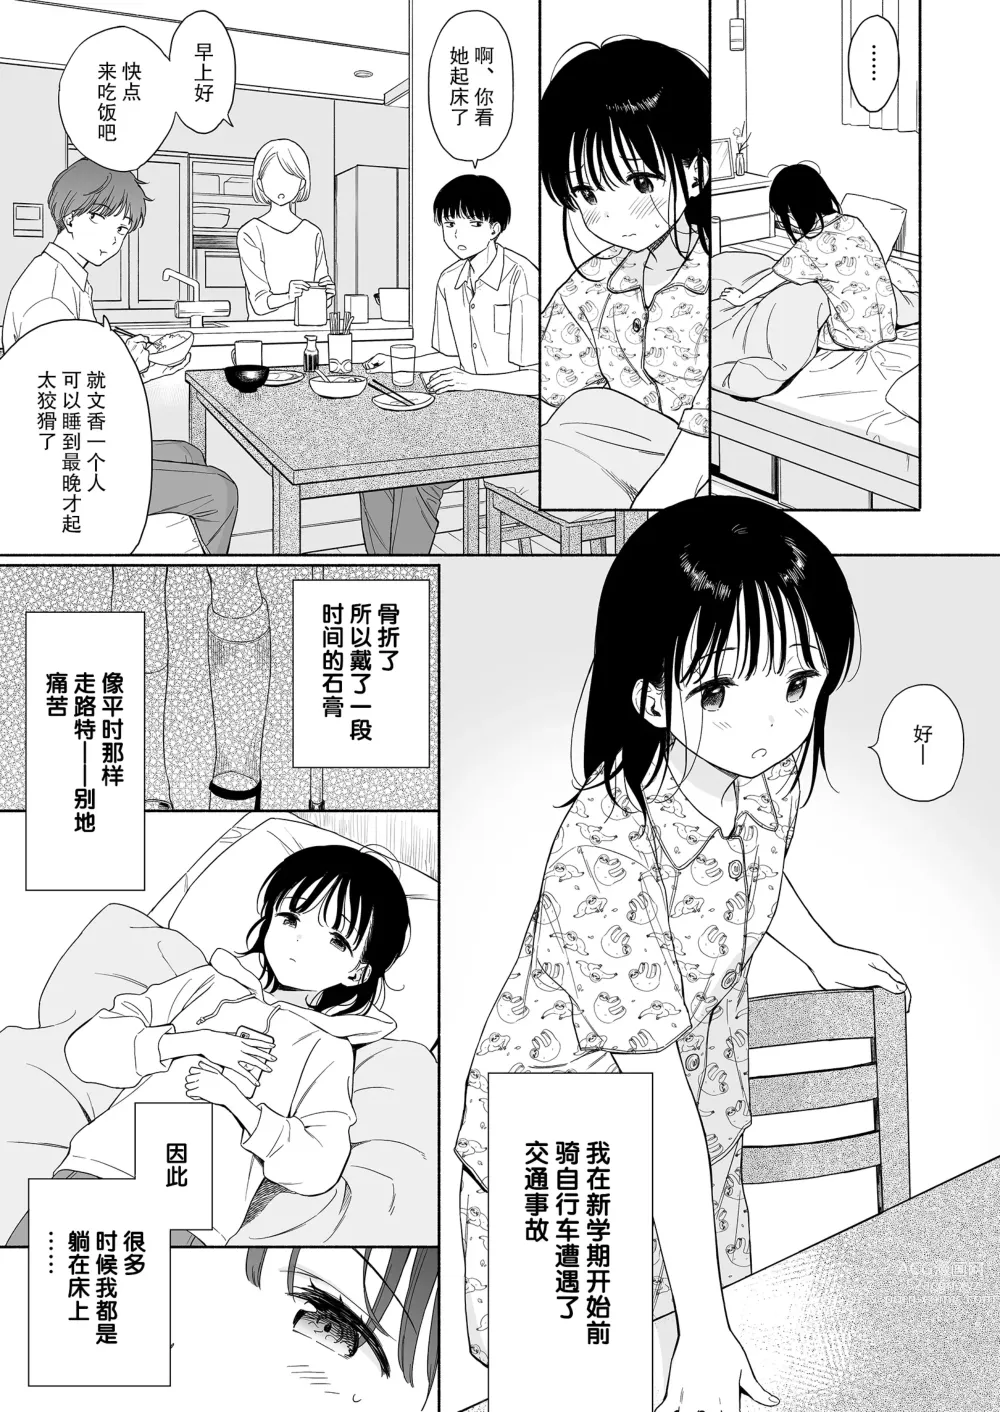 Page 6 of doujinshi Houkago Kagaku Club + Fumika no Yume Nikki